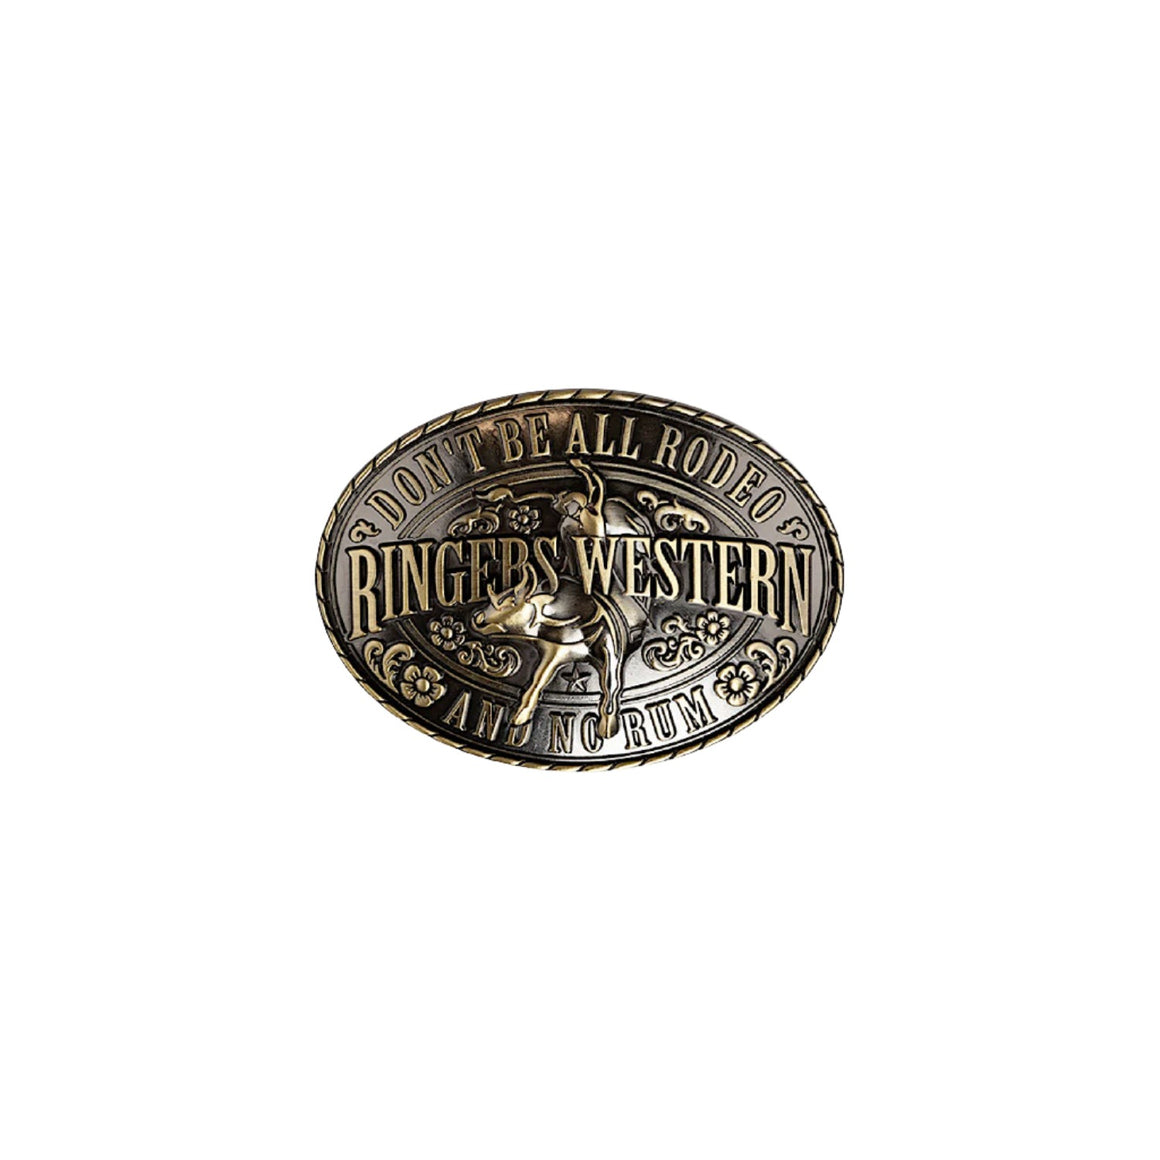 Ringers Western Talon Belt Buckle - Antique Brass